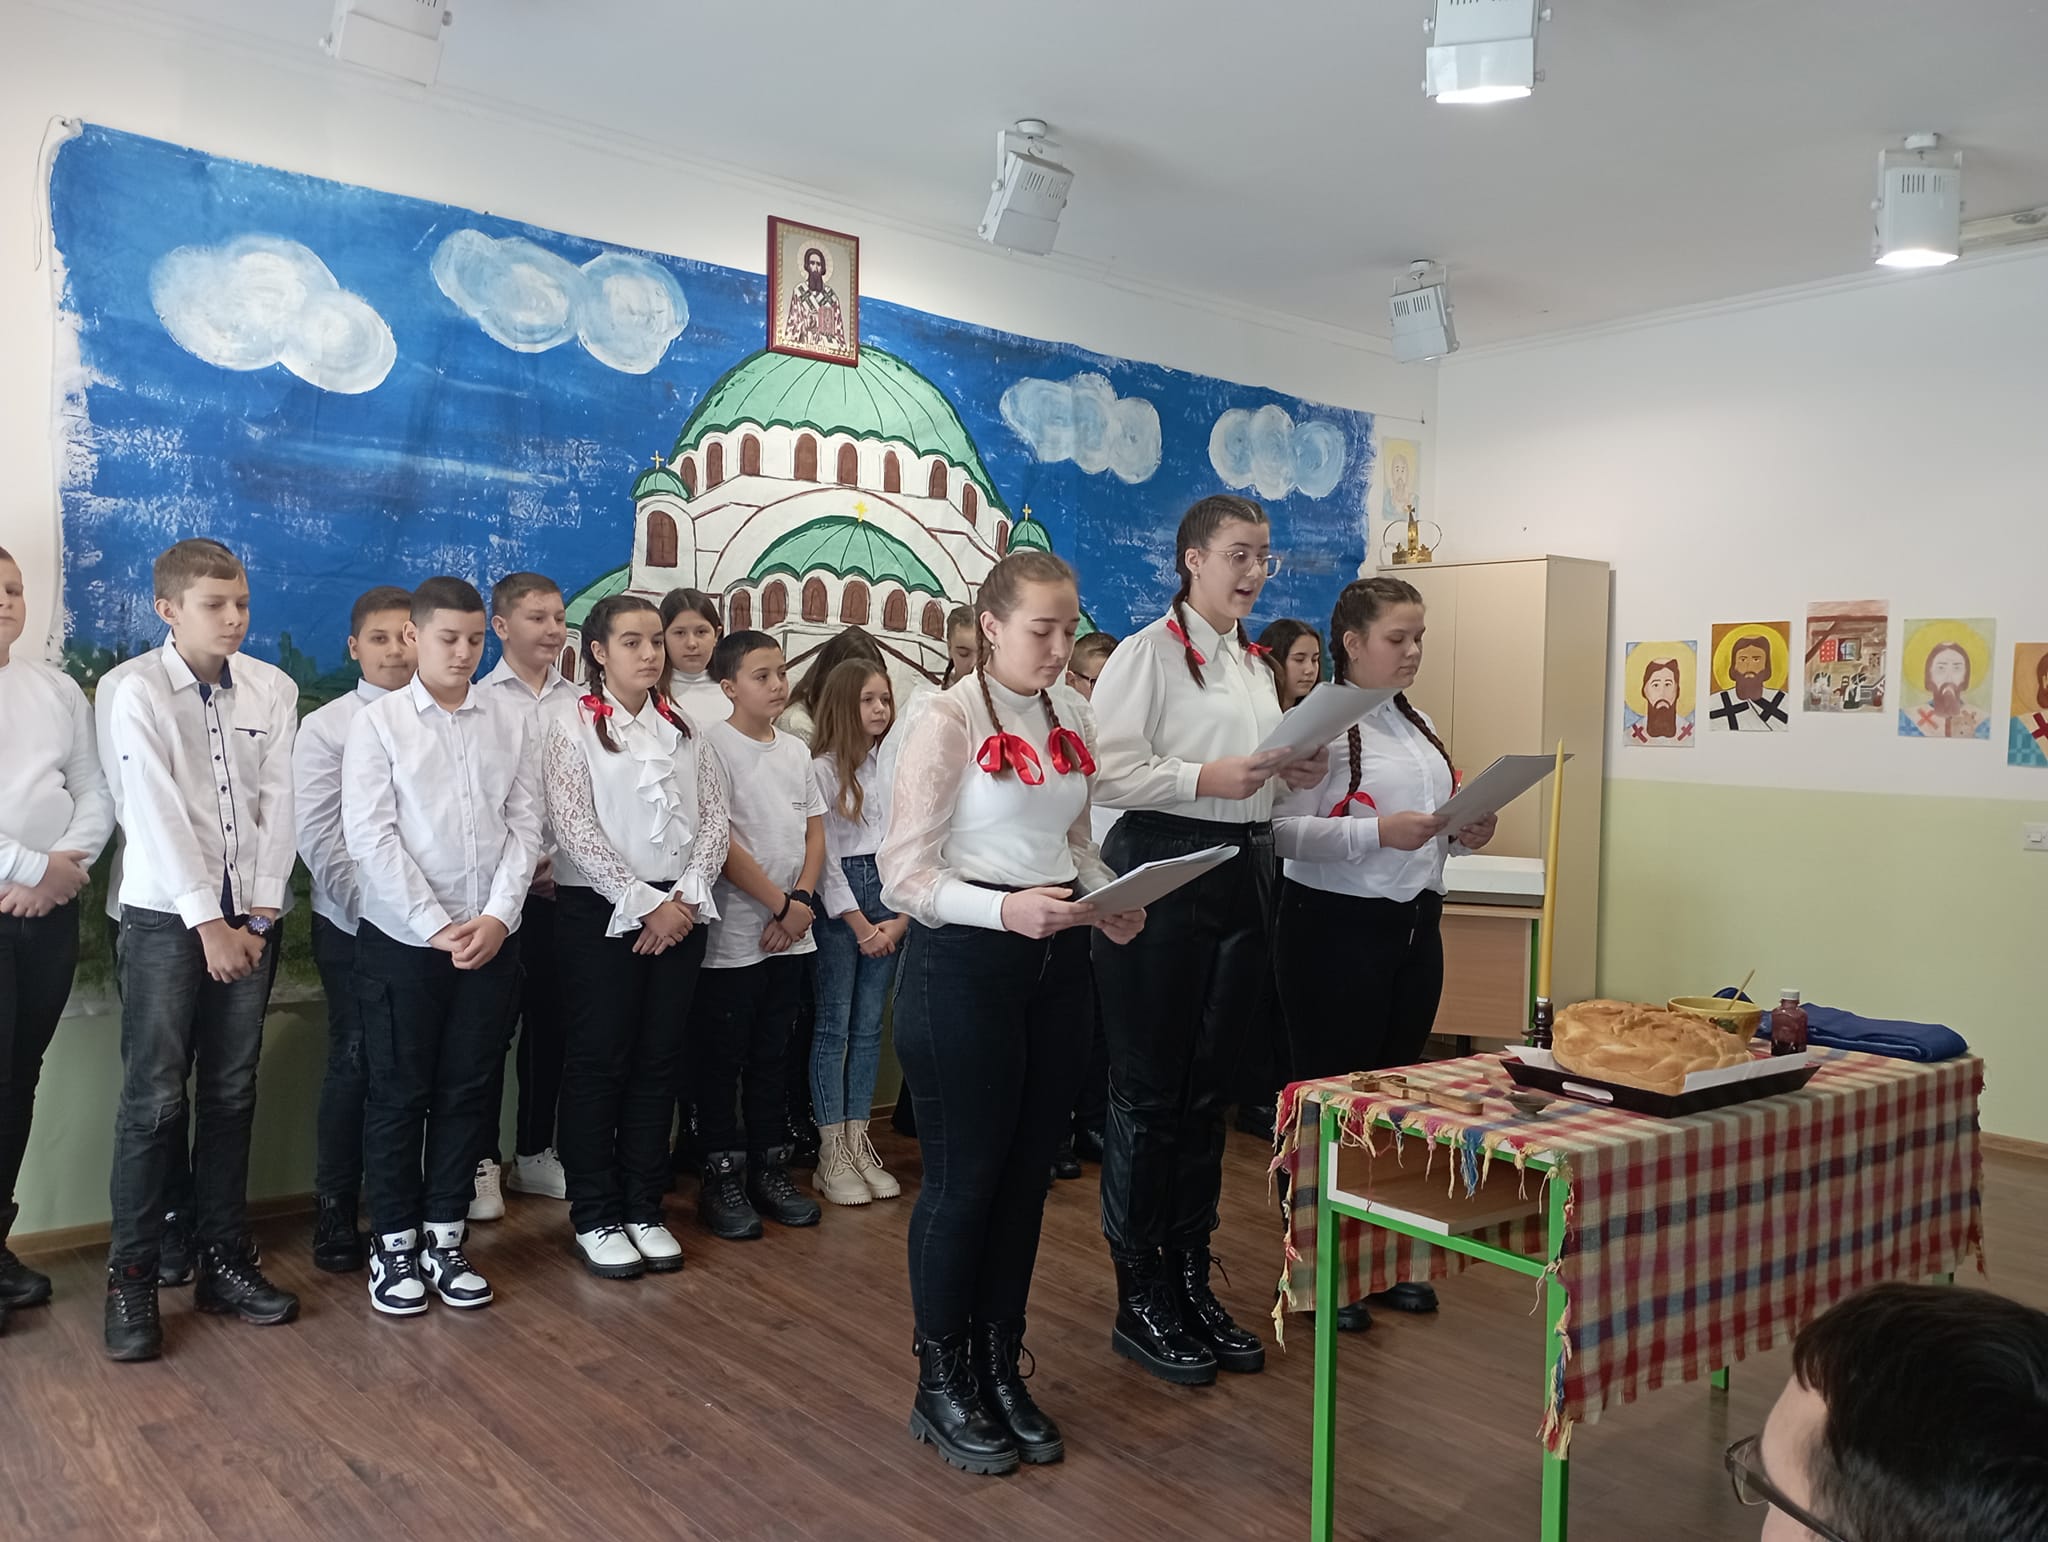 Školsku slavu proslavili u Donjoj Trnovi: Mladi naraštaji s ponosom nose snagu Svetosavlja